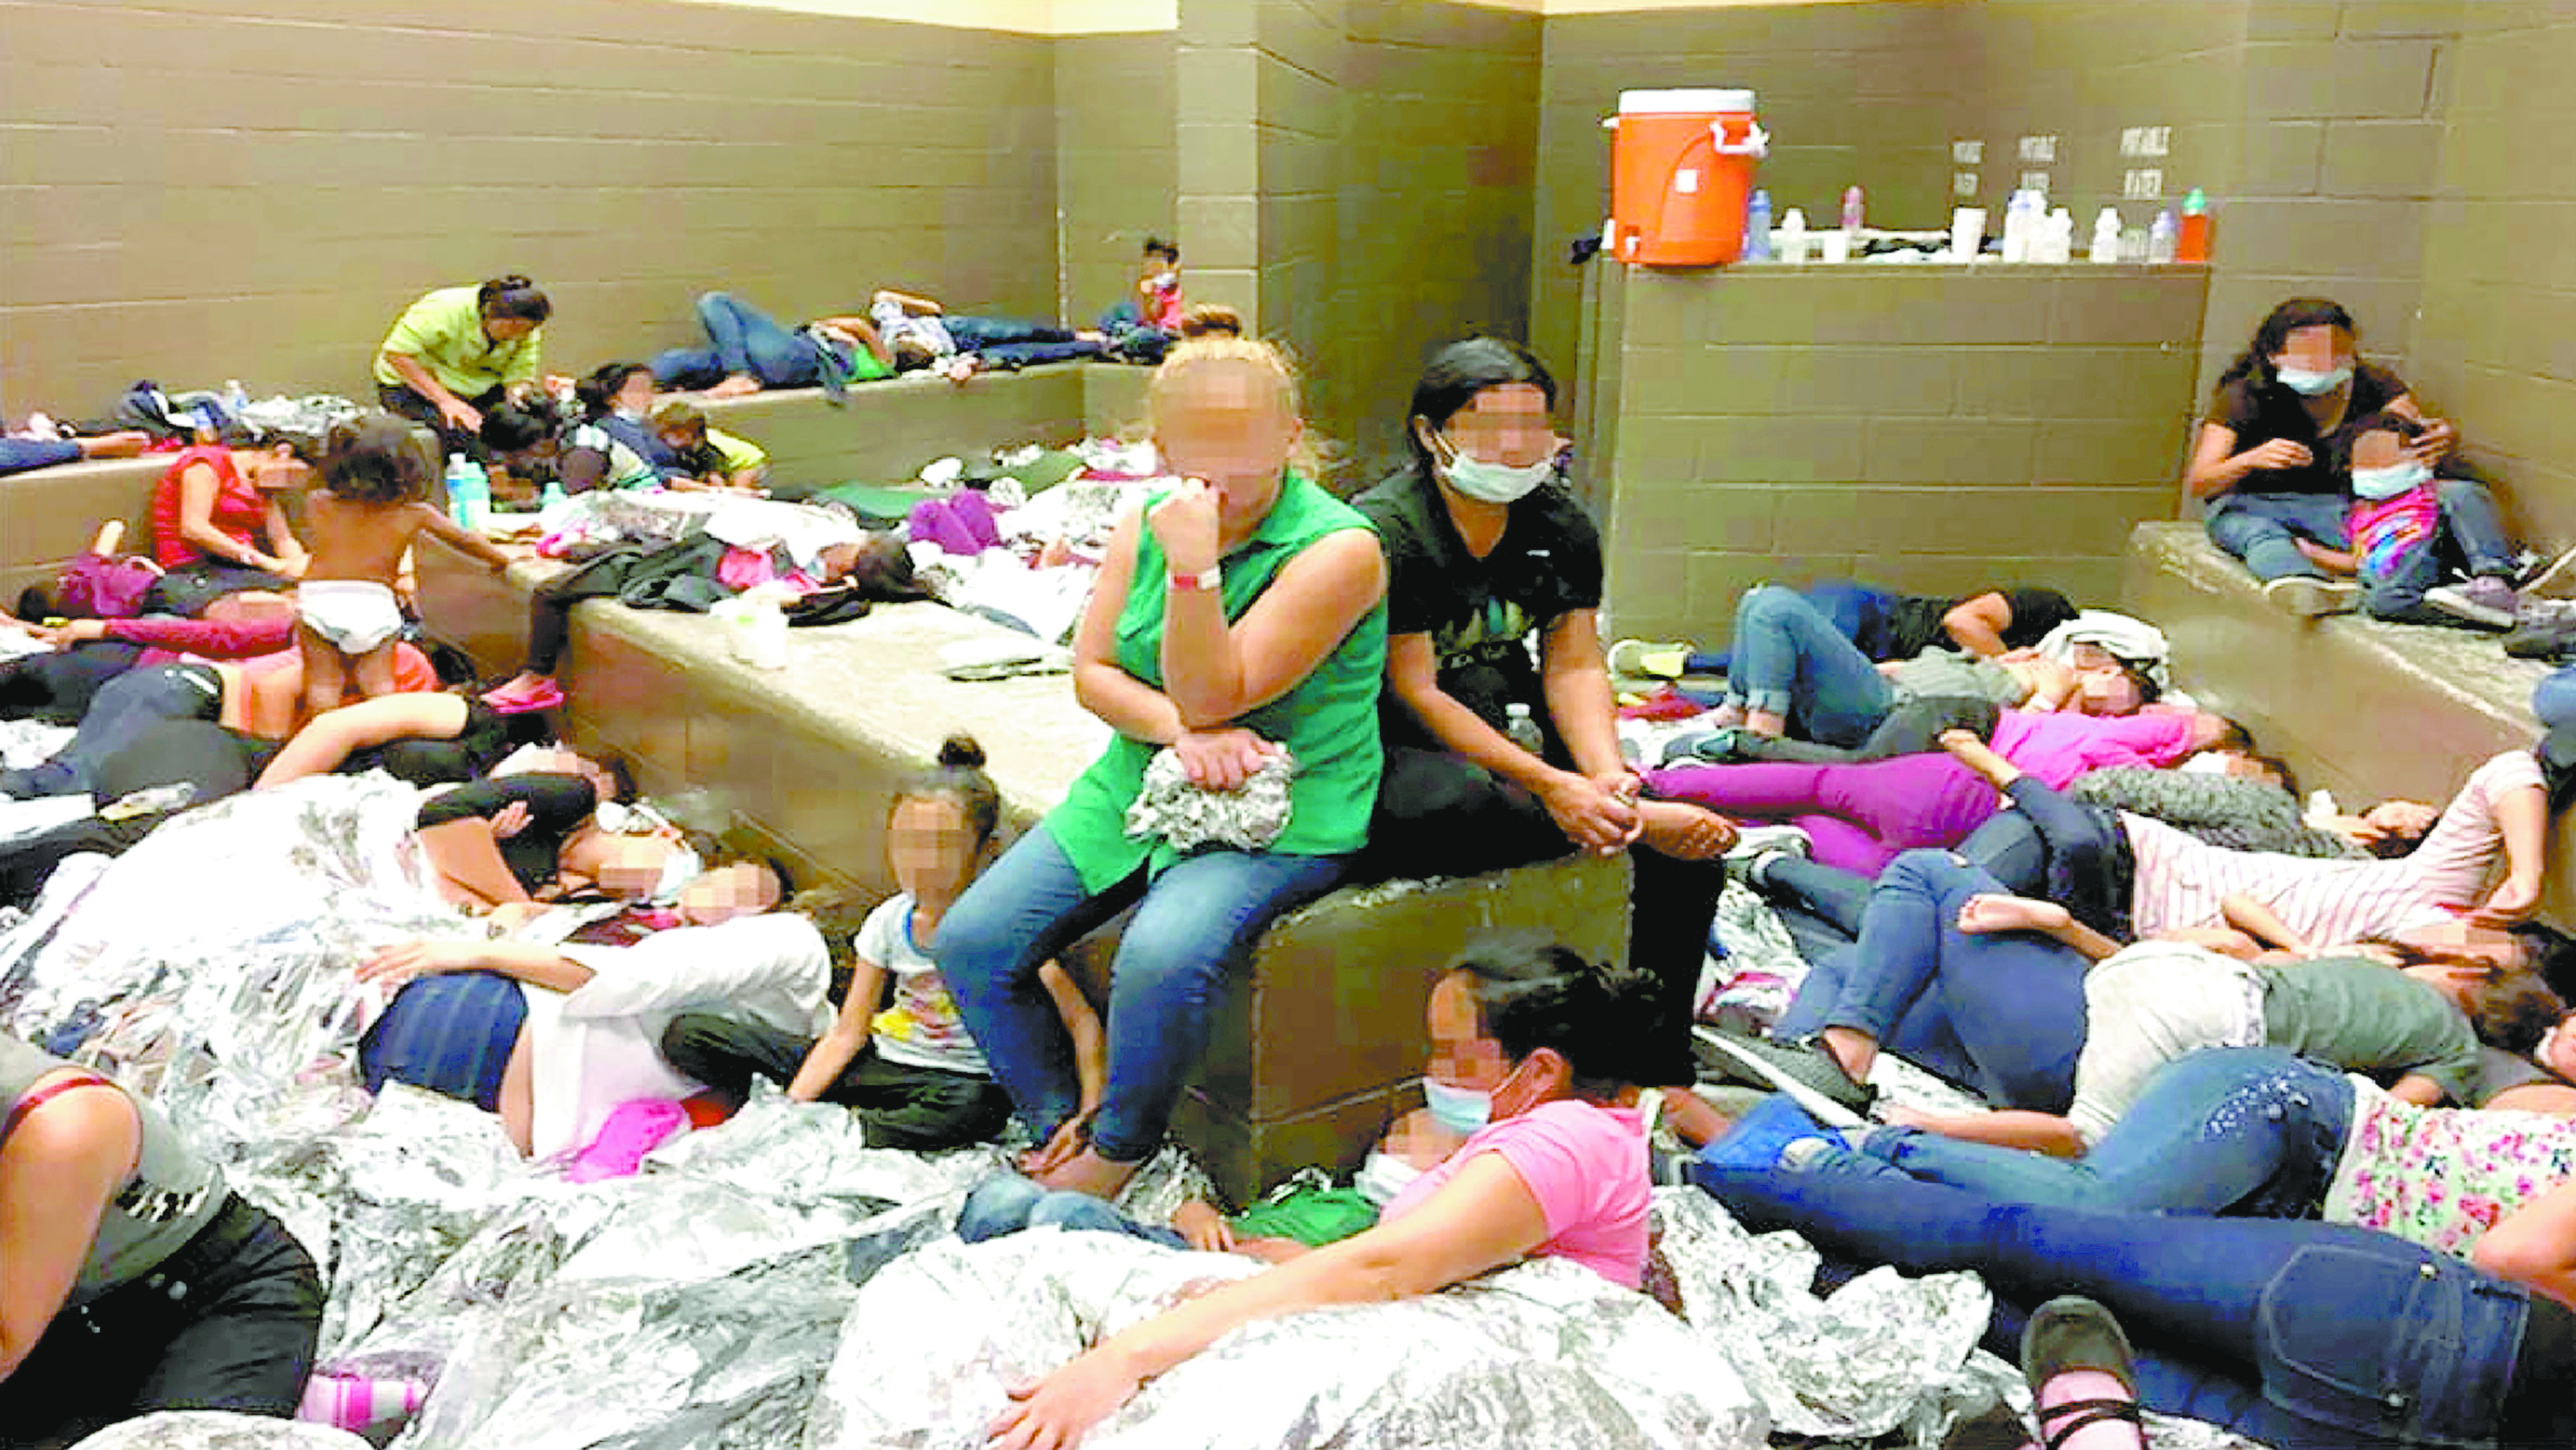 Revelan “infierno”: migrantes duermen unos sobre otros